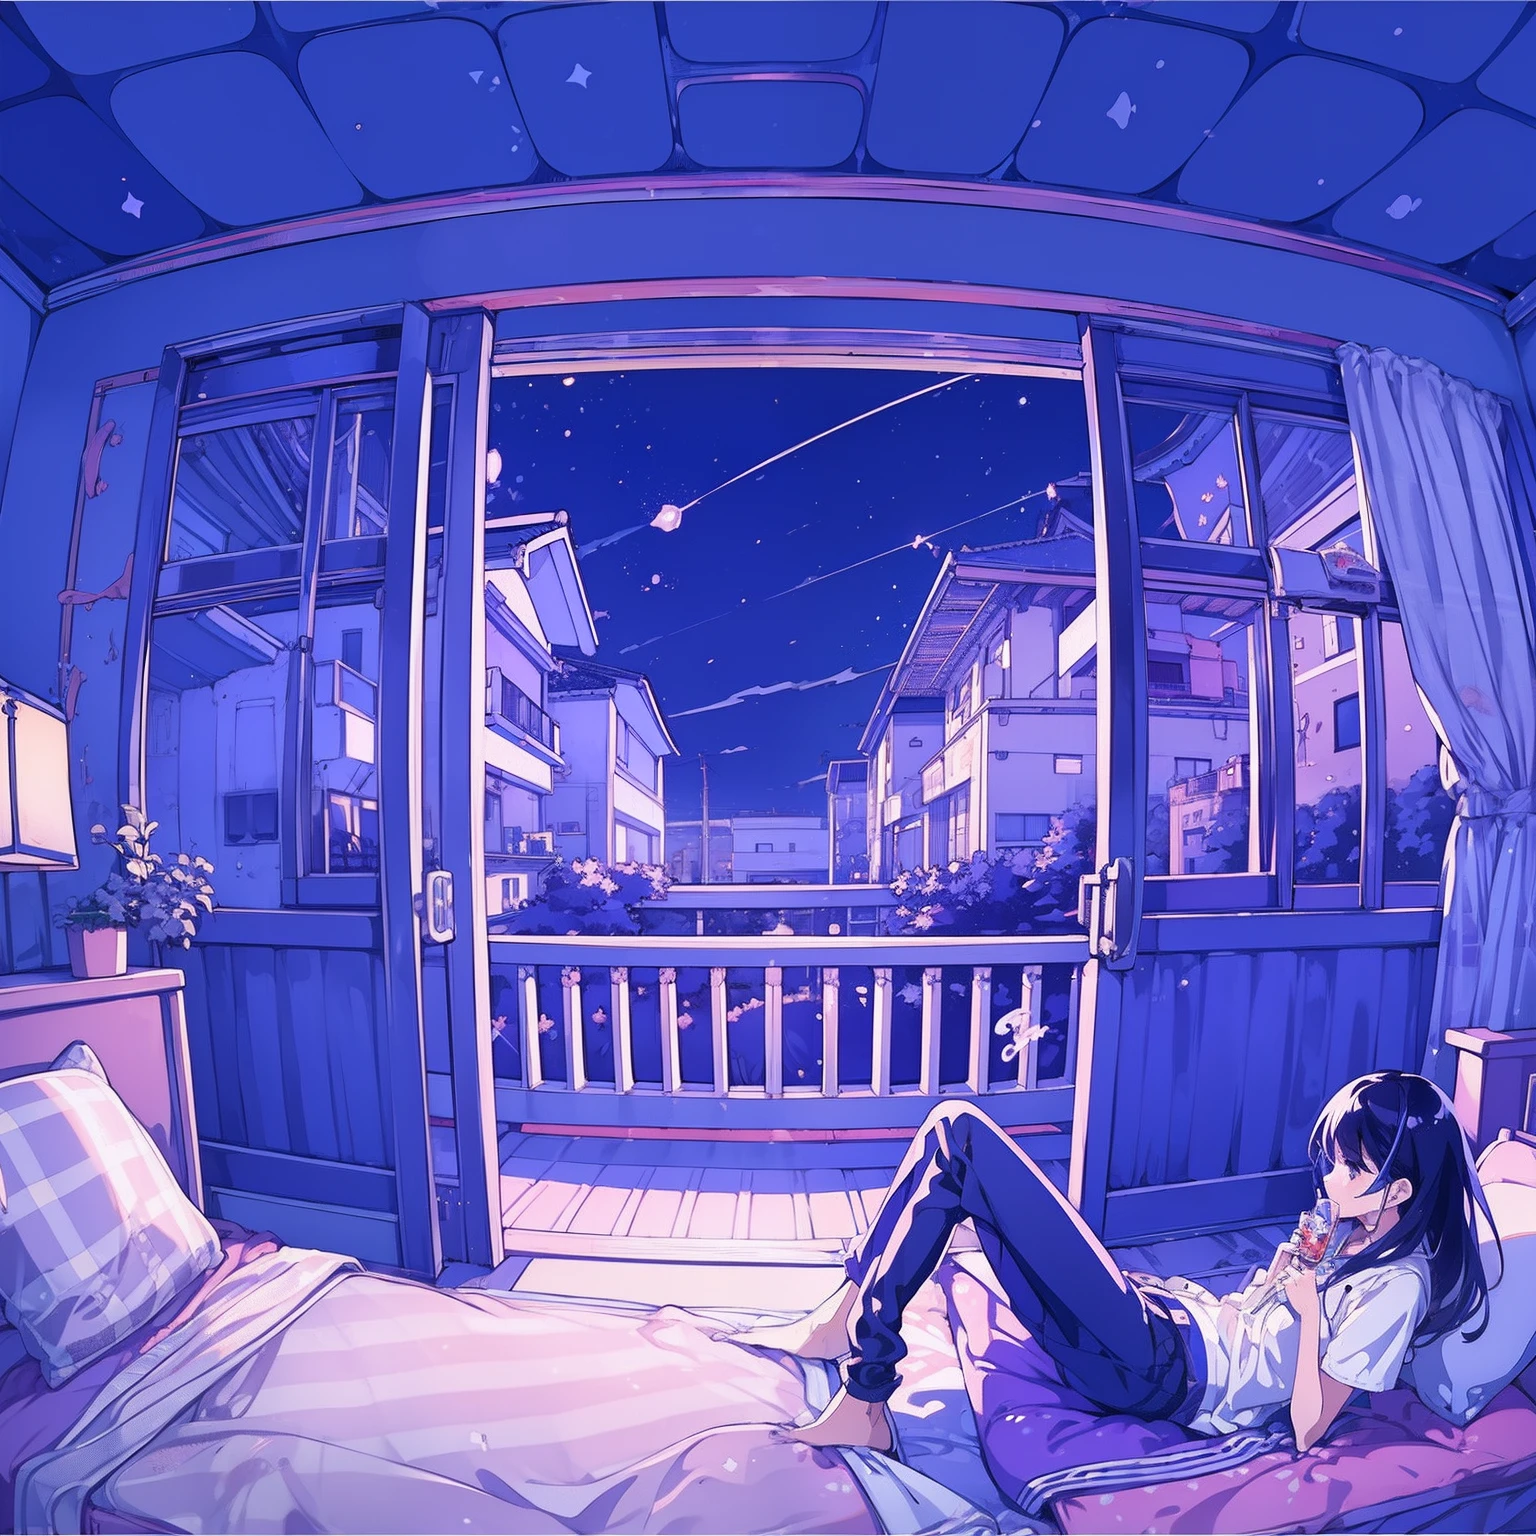 (걸작)、(최고 품질)、소녀、아파트 베란다에서 음악 듣기 일본 밖의 밤하늘、비、애니메이션 만화 스타일、 By Shinkai Makoto